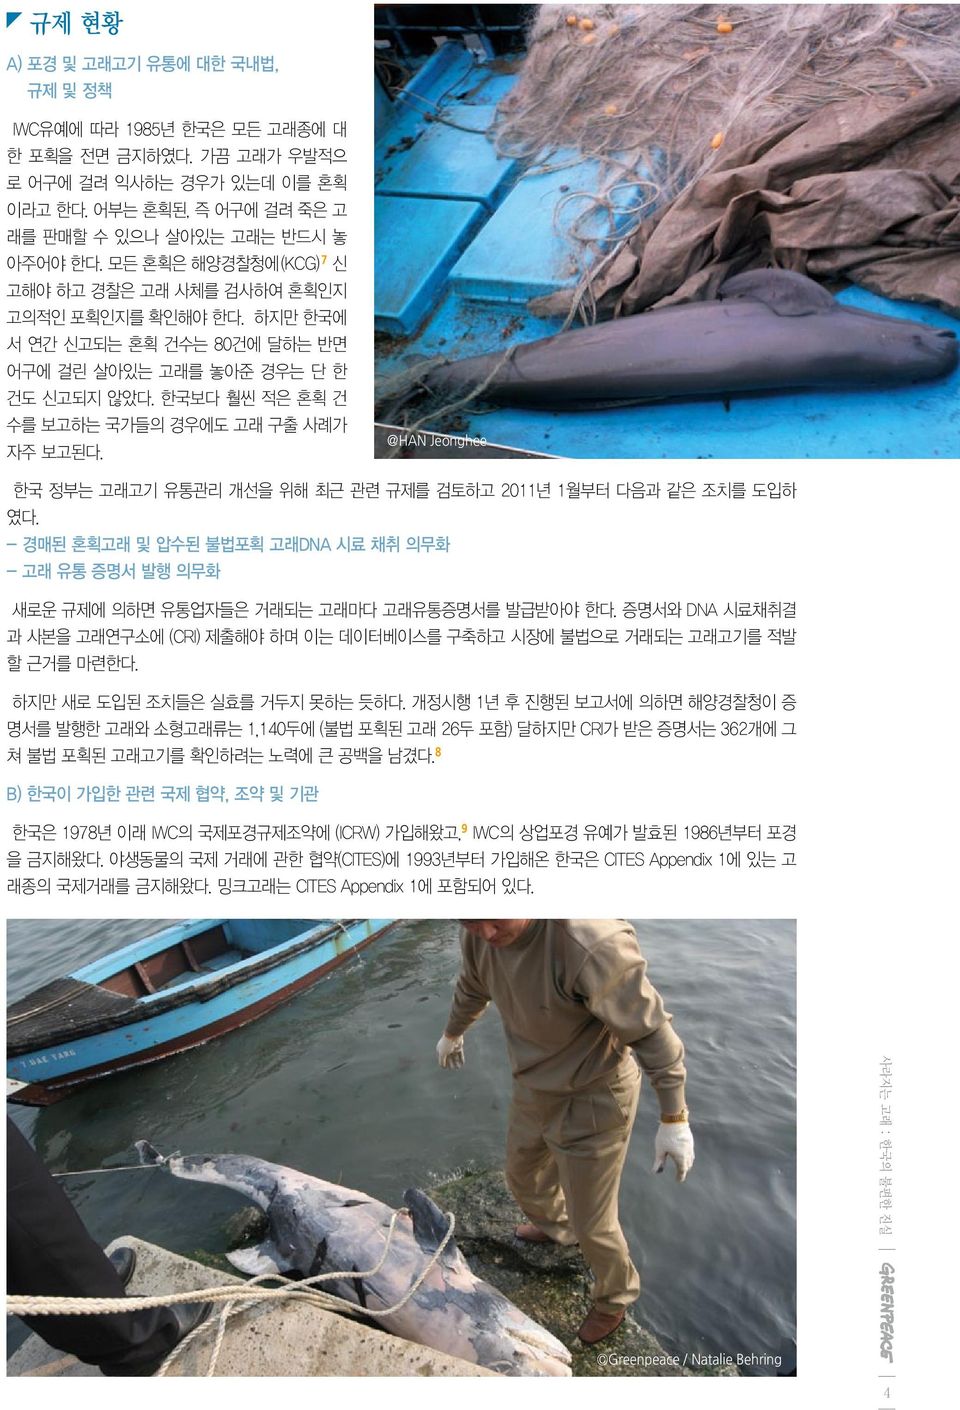 한국보다 훨씬 적은 혼획 건 수를 보고하는 국가들의 경우에도 고래 구출 사례가 자주 보고된다. @HAN Jeonghee 한국 정부는 고래고기 유통관리 개선을 위해 최근 관련 규제를 검토하고 2011년 1월부터 다음과 같은 조치를 도입하 였다.